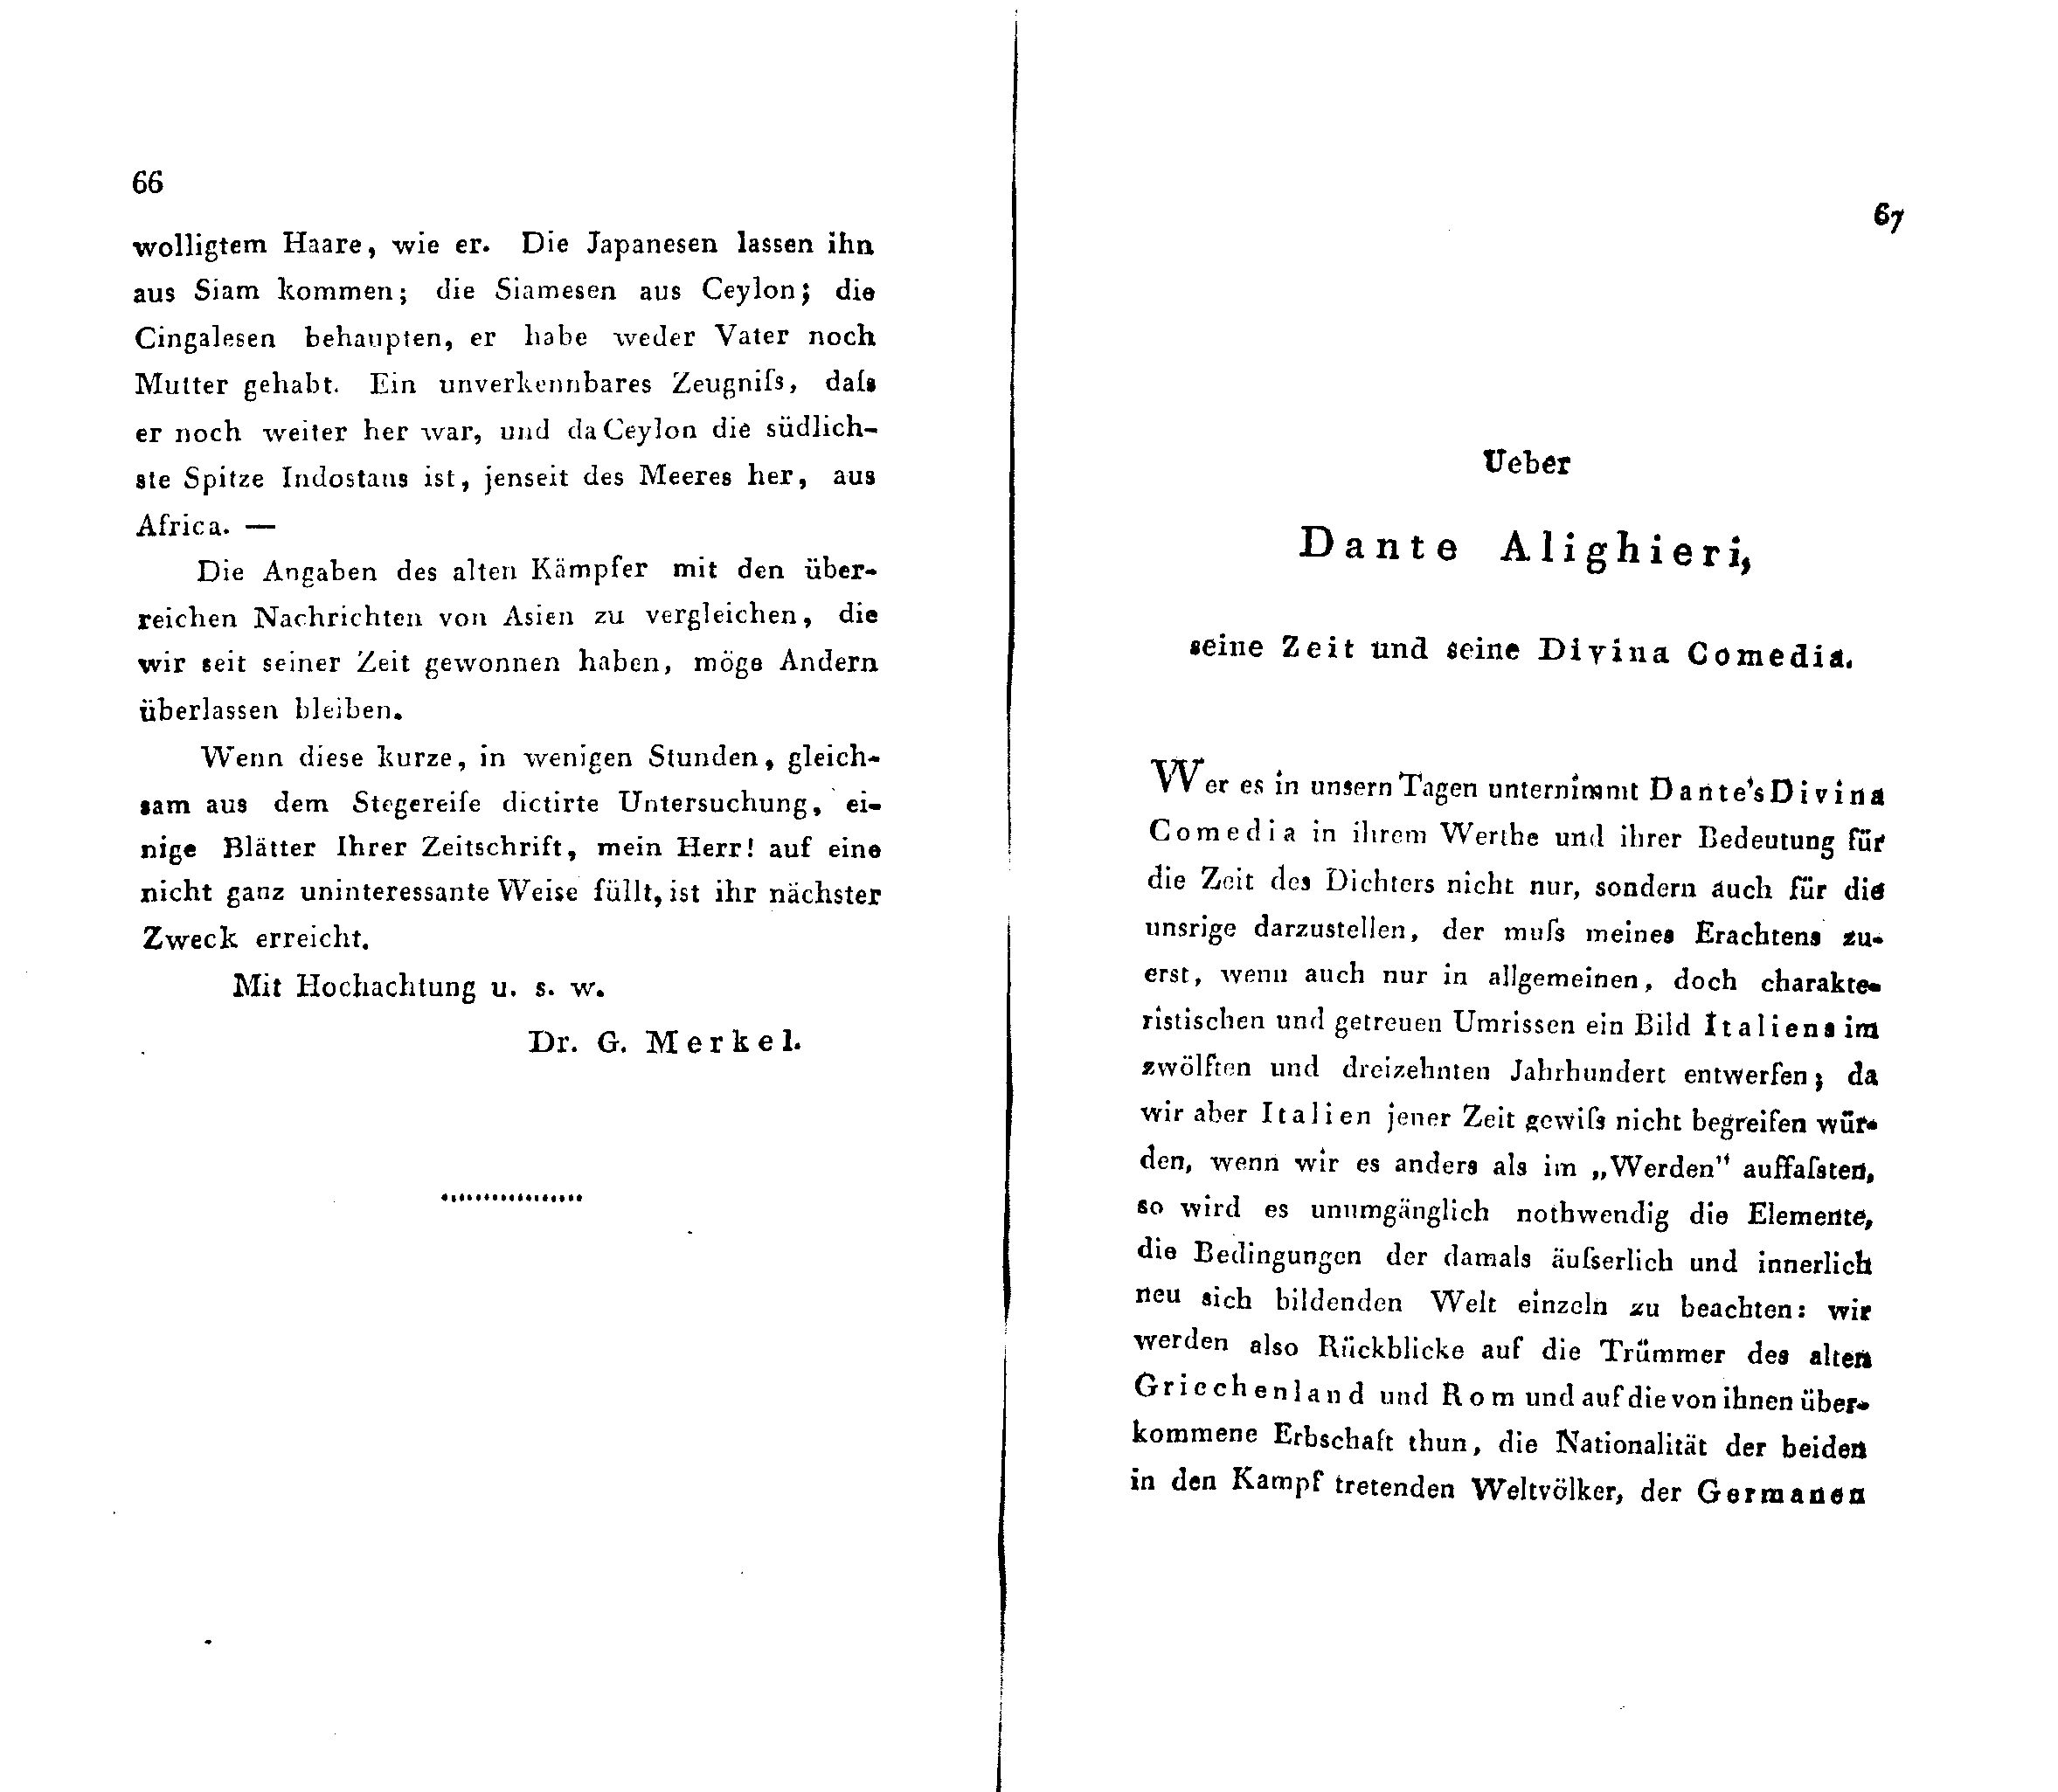 Ueber Dante Alighieri, seine Zeit und seine Divina Comedia (1824 – 1825) | 1. (66-67) Main body of text